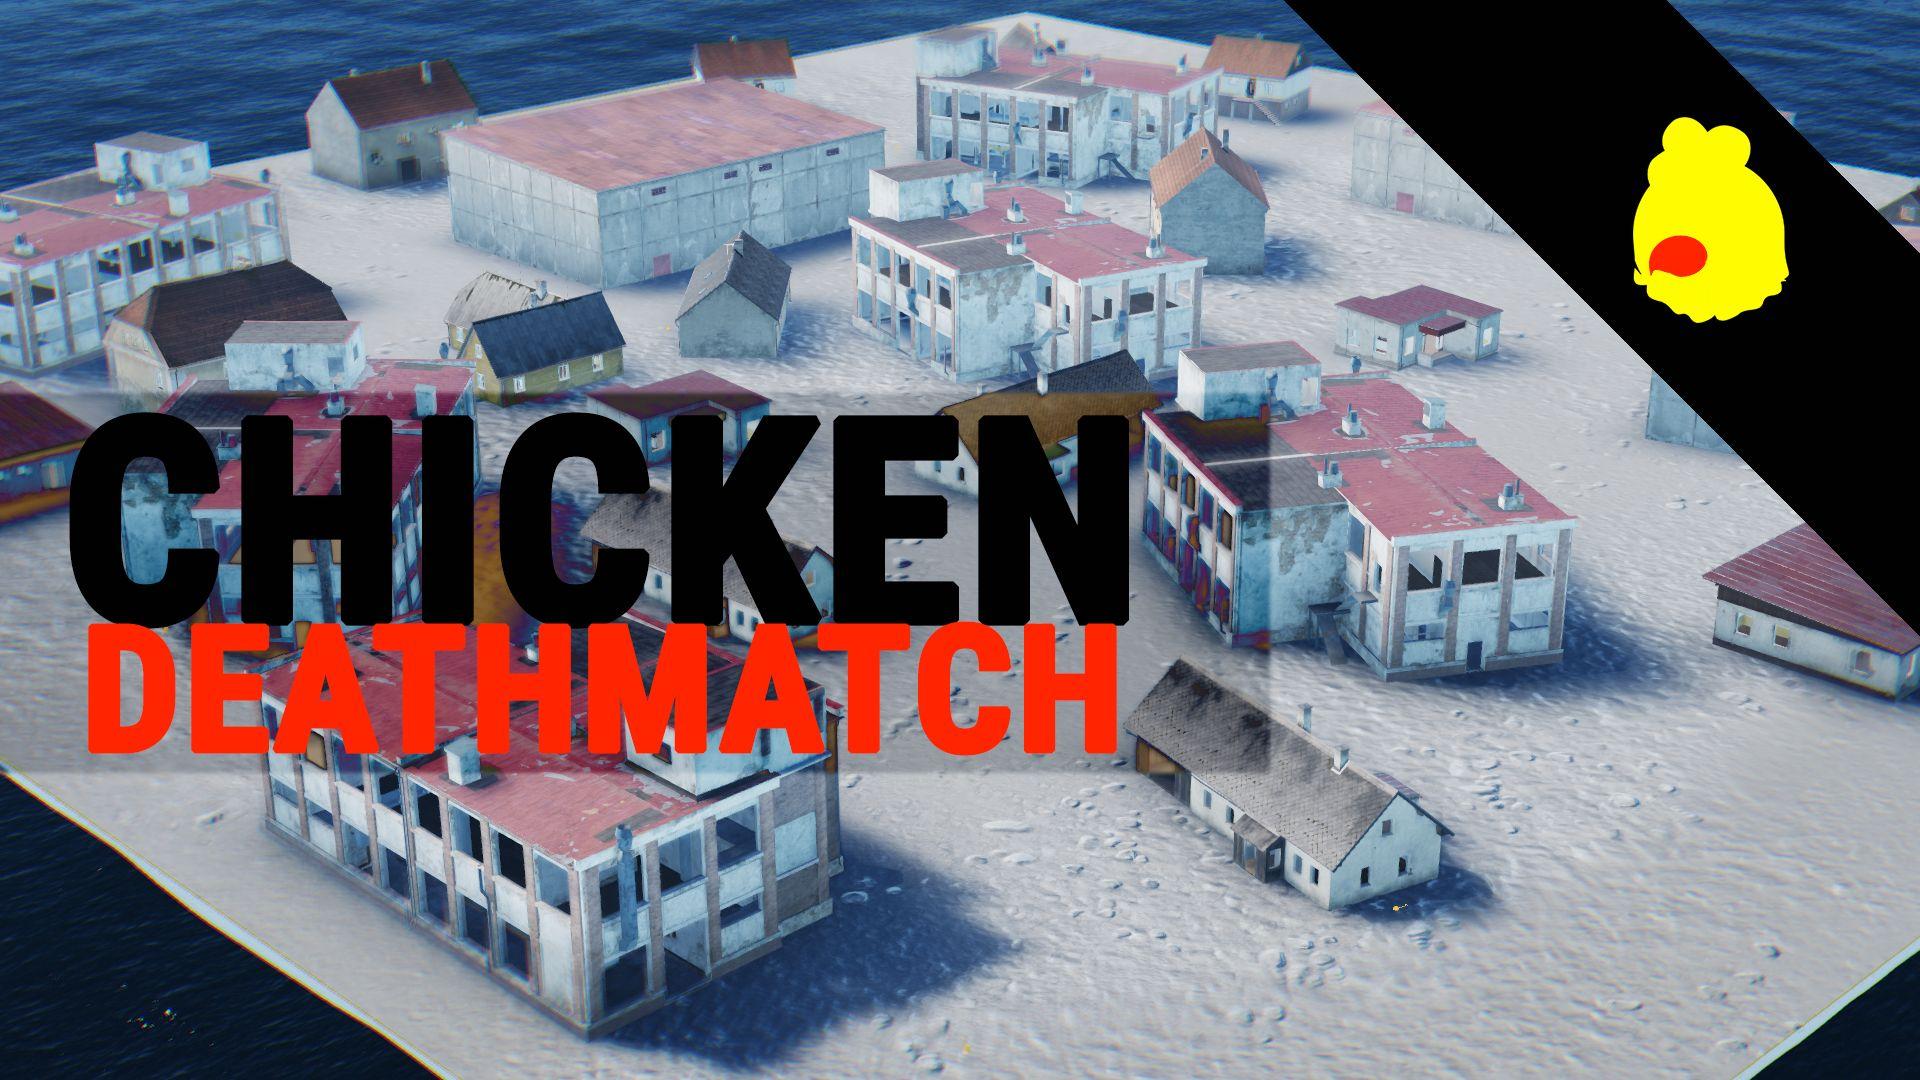 Deathmatch Chicken